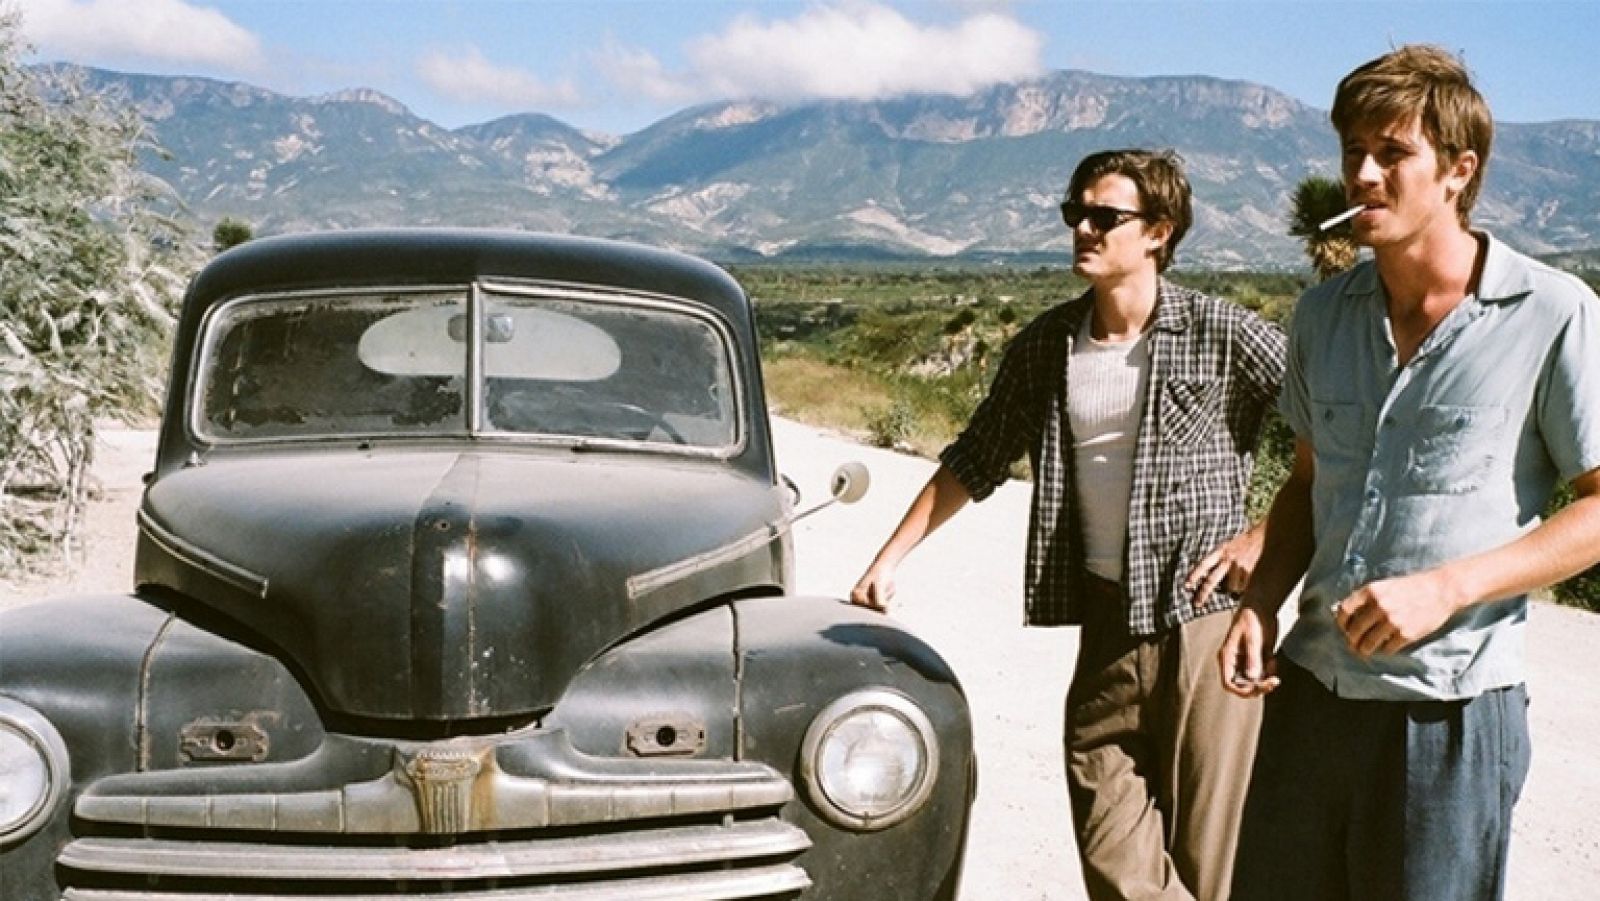  En el Camino, la película de Walter Salles basada en la novela de Jack Kerouac, cumbre de la generación beat, llegará a las pantallas españolas en enero de 2012 el 19 de abril de 2013. Está prtagonizada por  Garrett Hedlund, Sam Riley, Kristen Dunst y Viggo Mortensen.